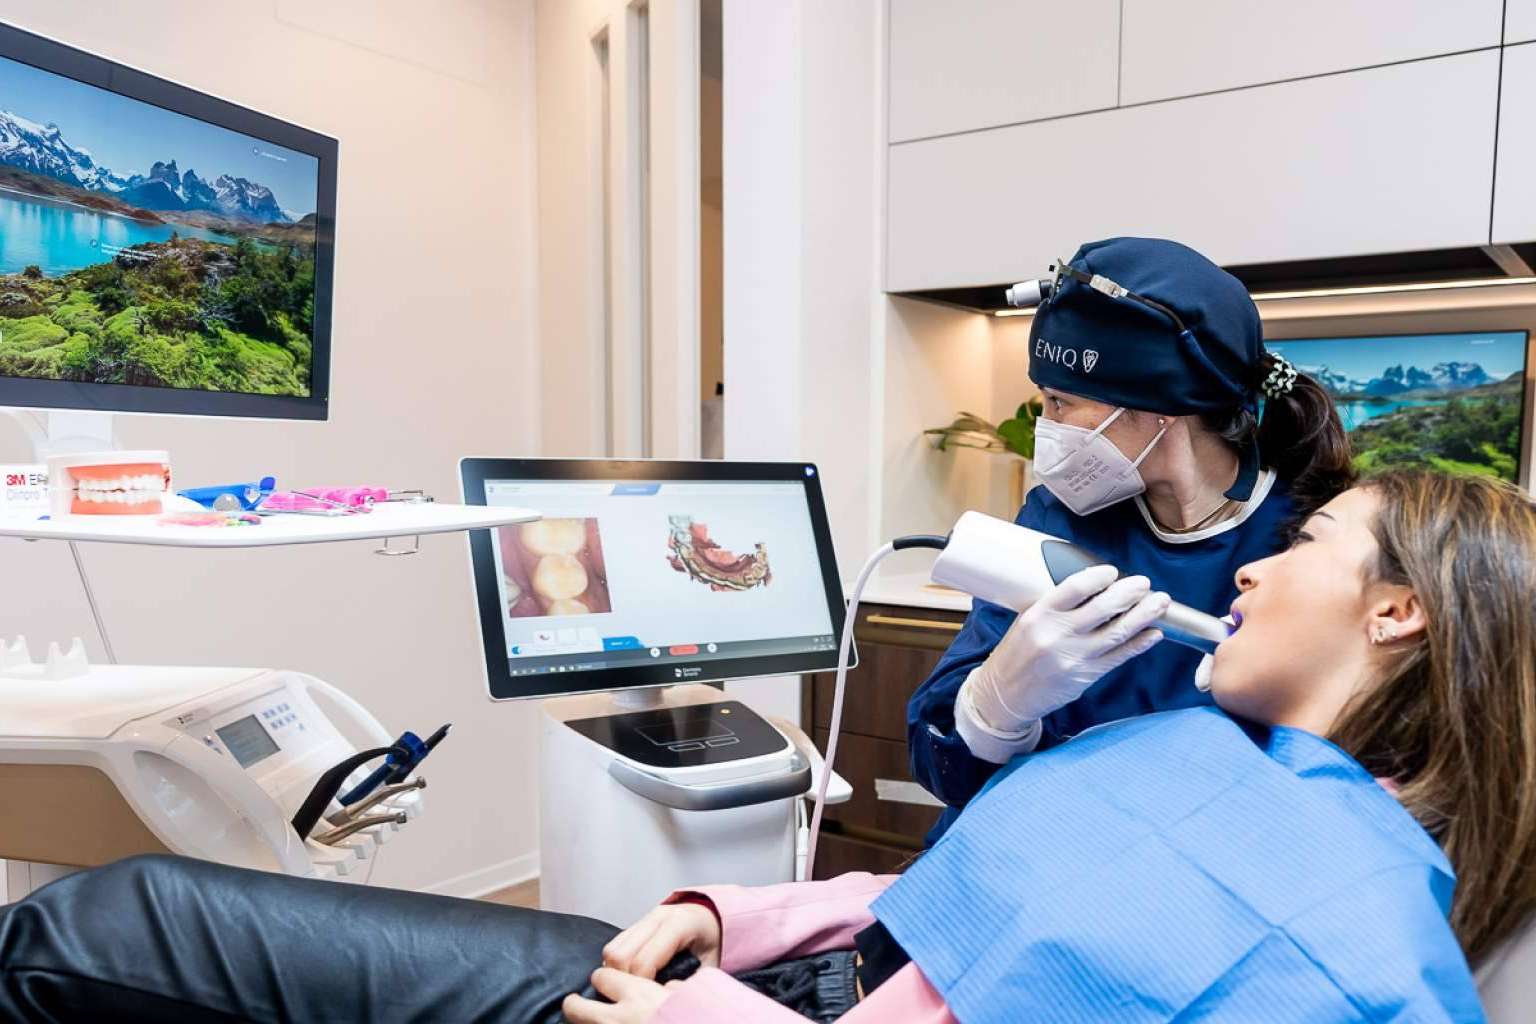 El tratamiento de ortodoncia invisible en Madrid en Clínica Eniq se convierte en la mejor alternativa a los brackets tradicionales